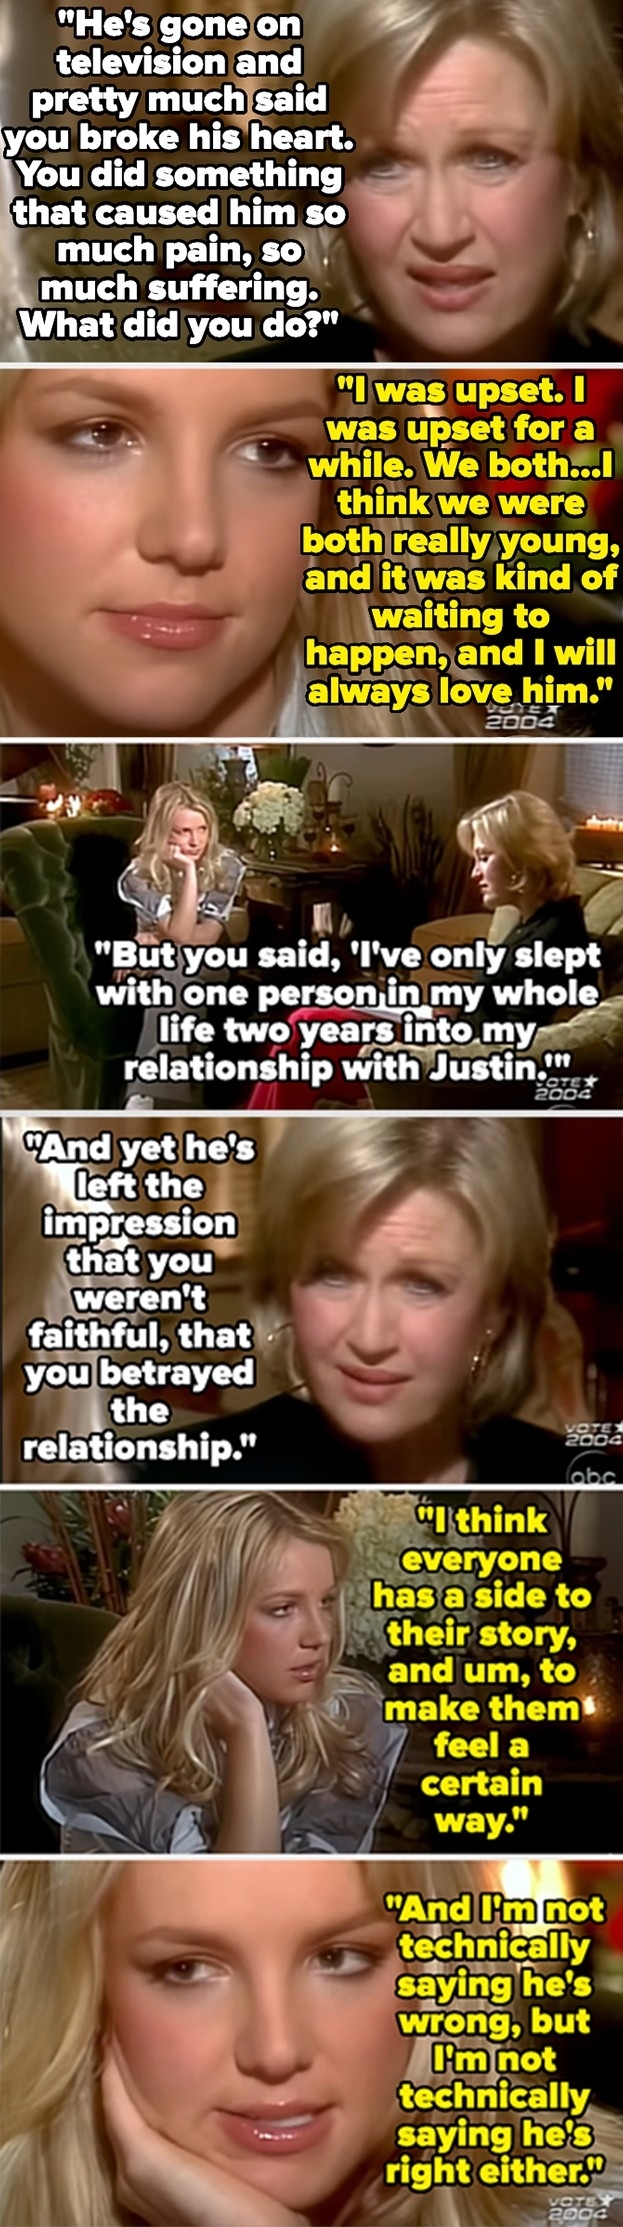 Britney Spears being interviewed